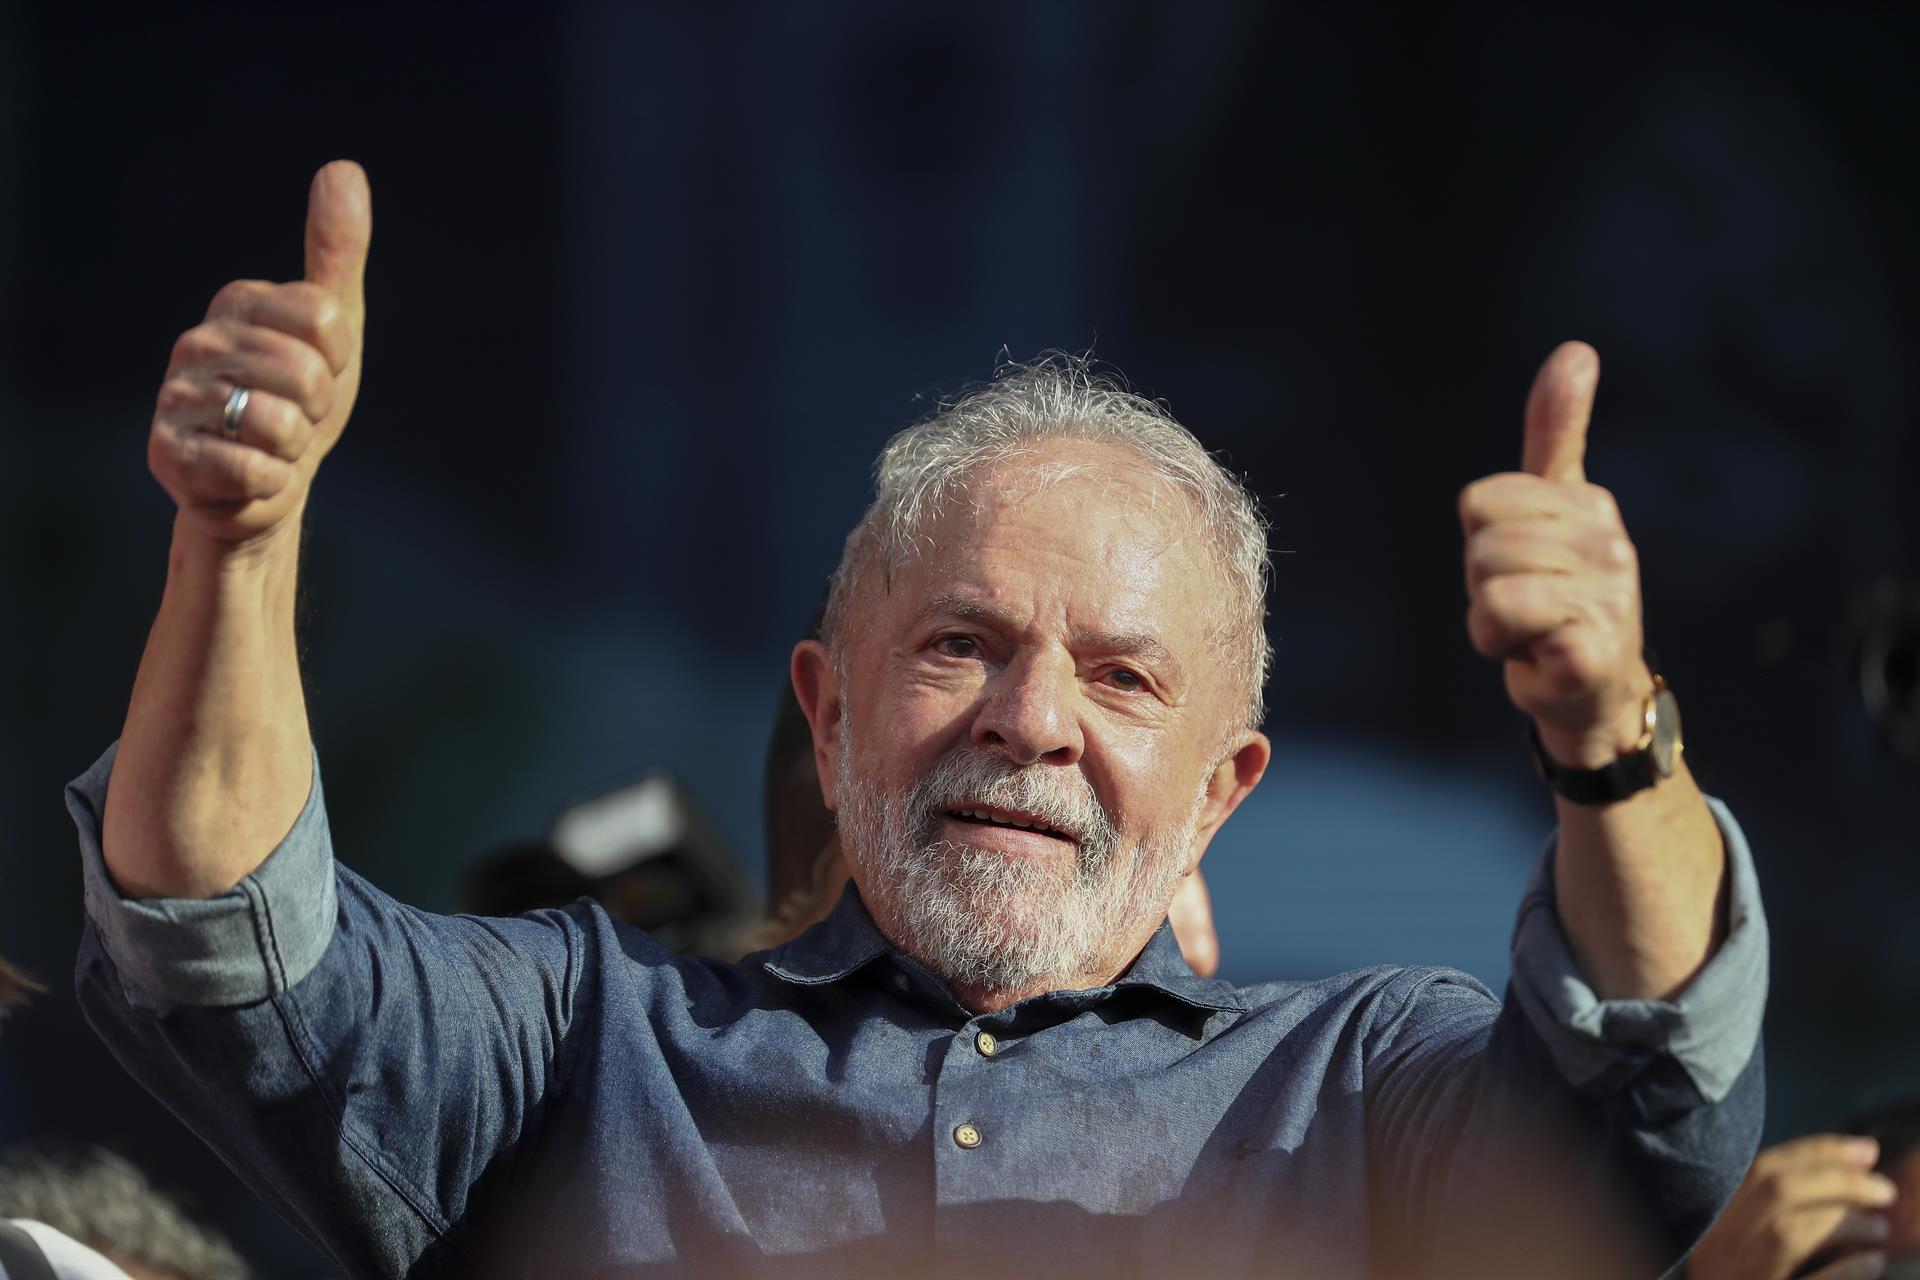 Daniel y Rosario saludan triunfo de Lula Da Silva en Brasil Managua. Radio La Primerísima